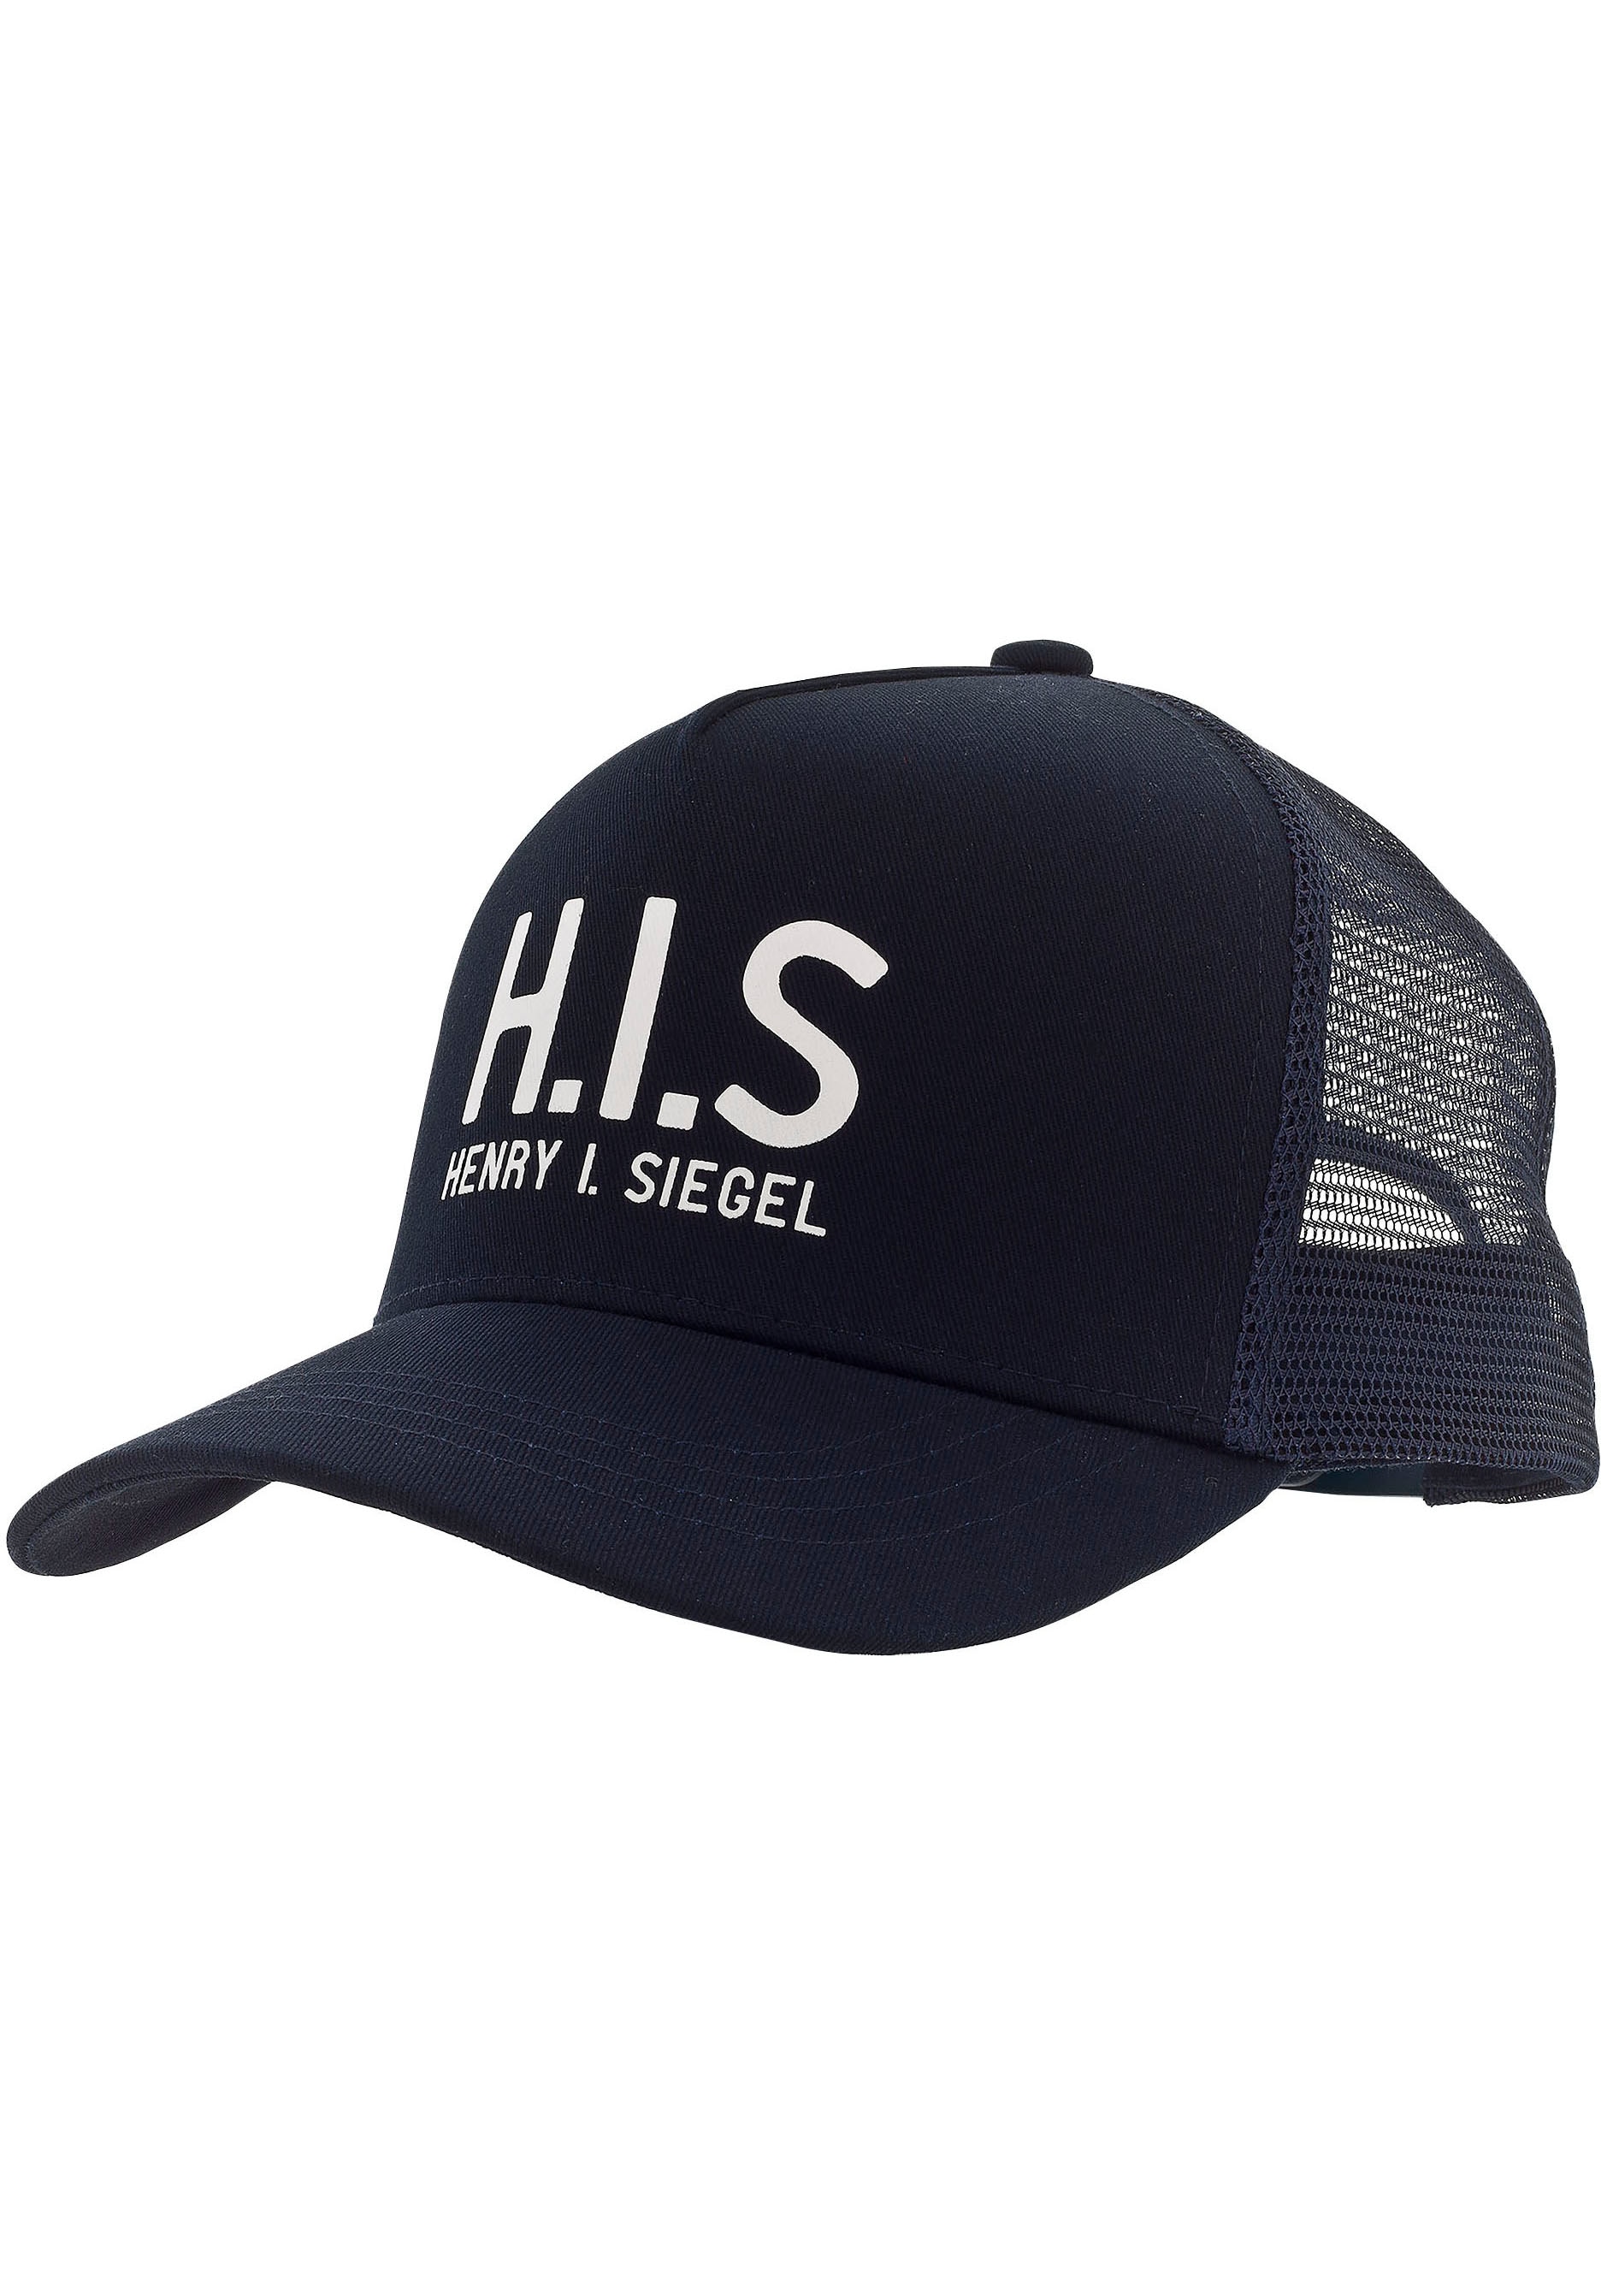 Baseball Cap, Mesh-Cap mit H.I.S.-Print